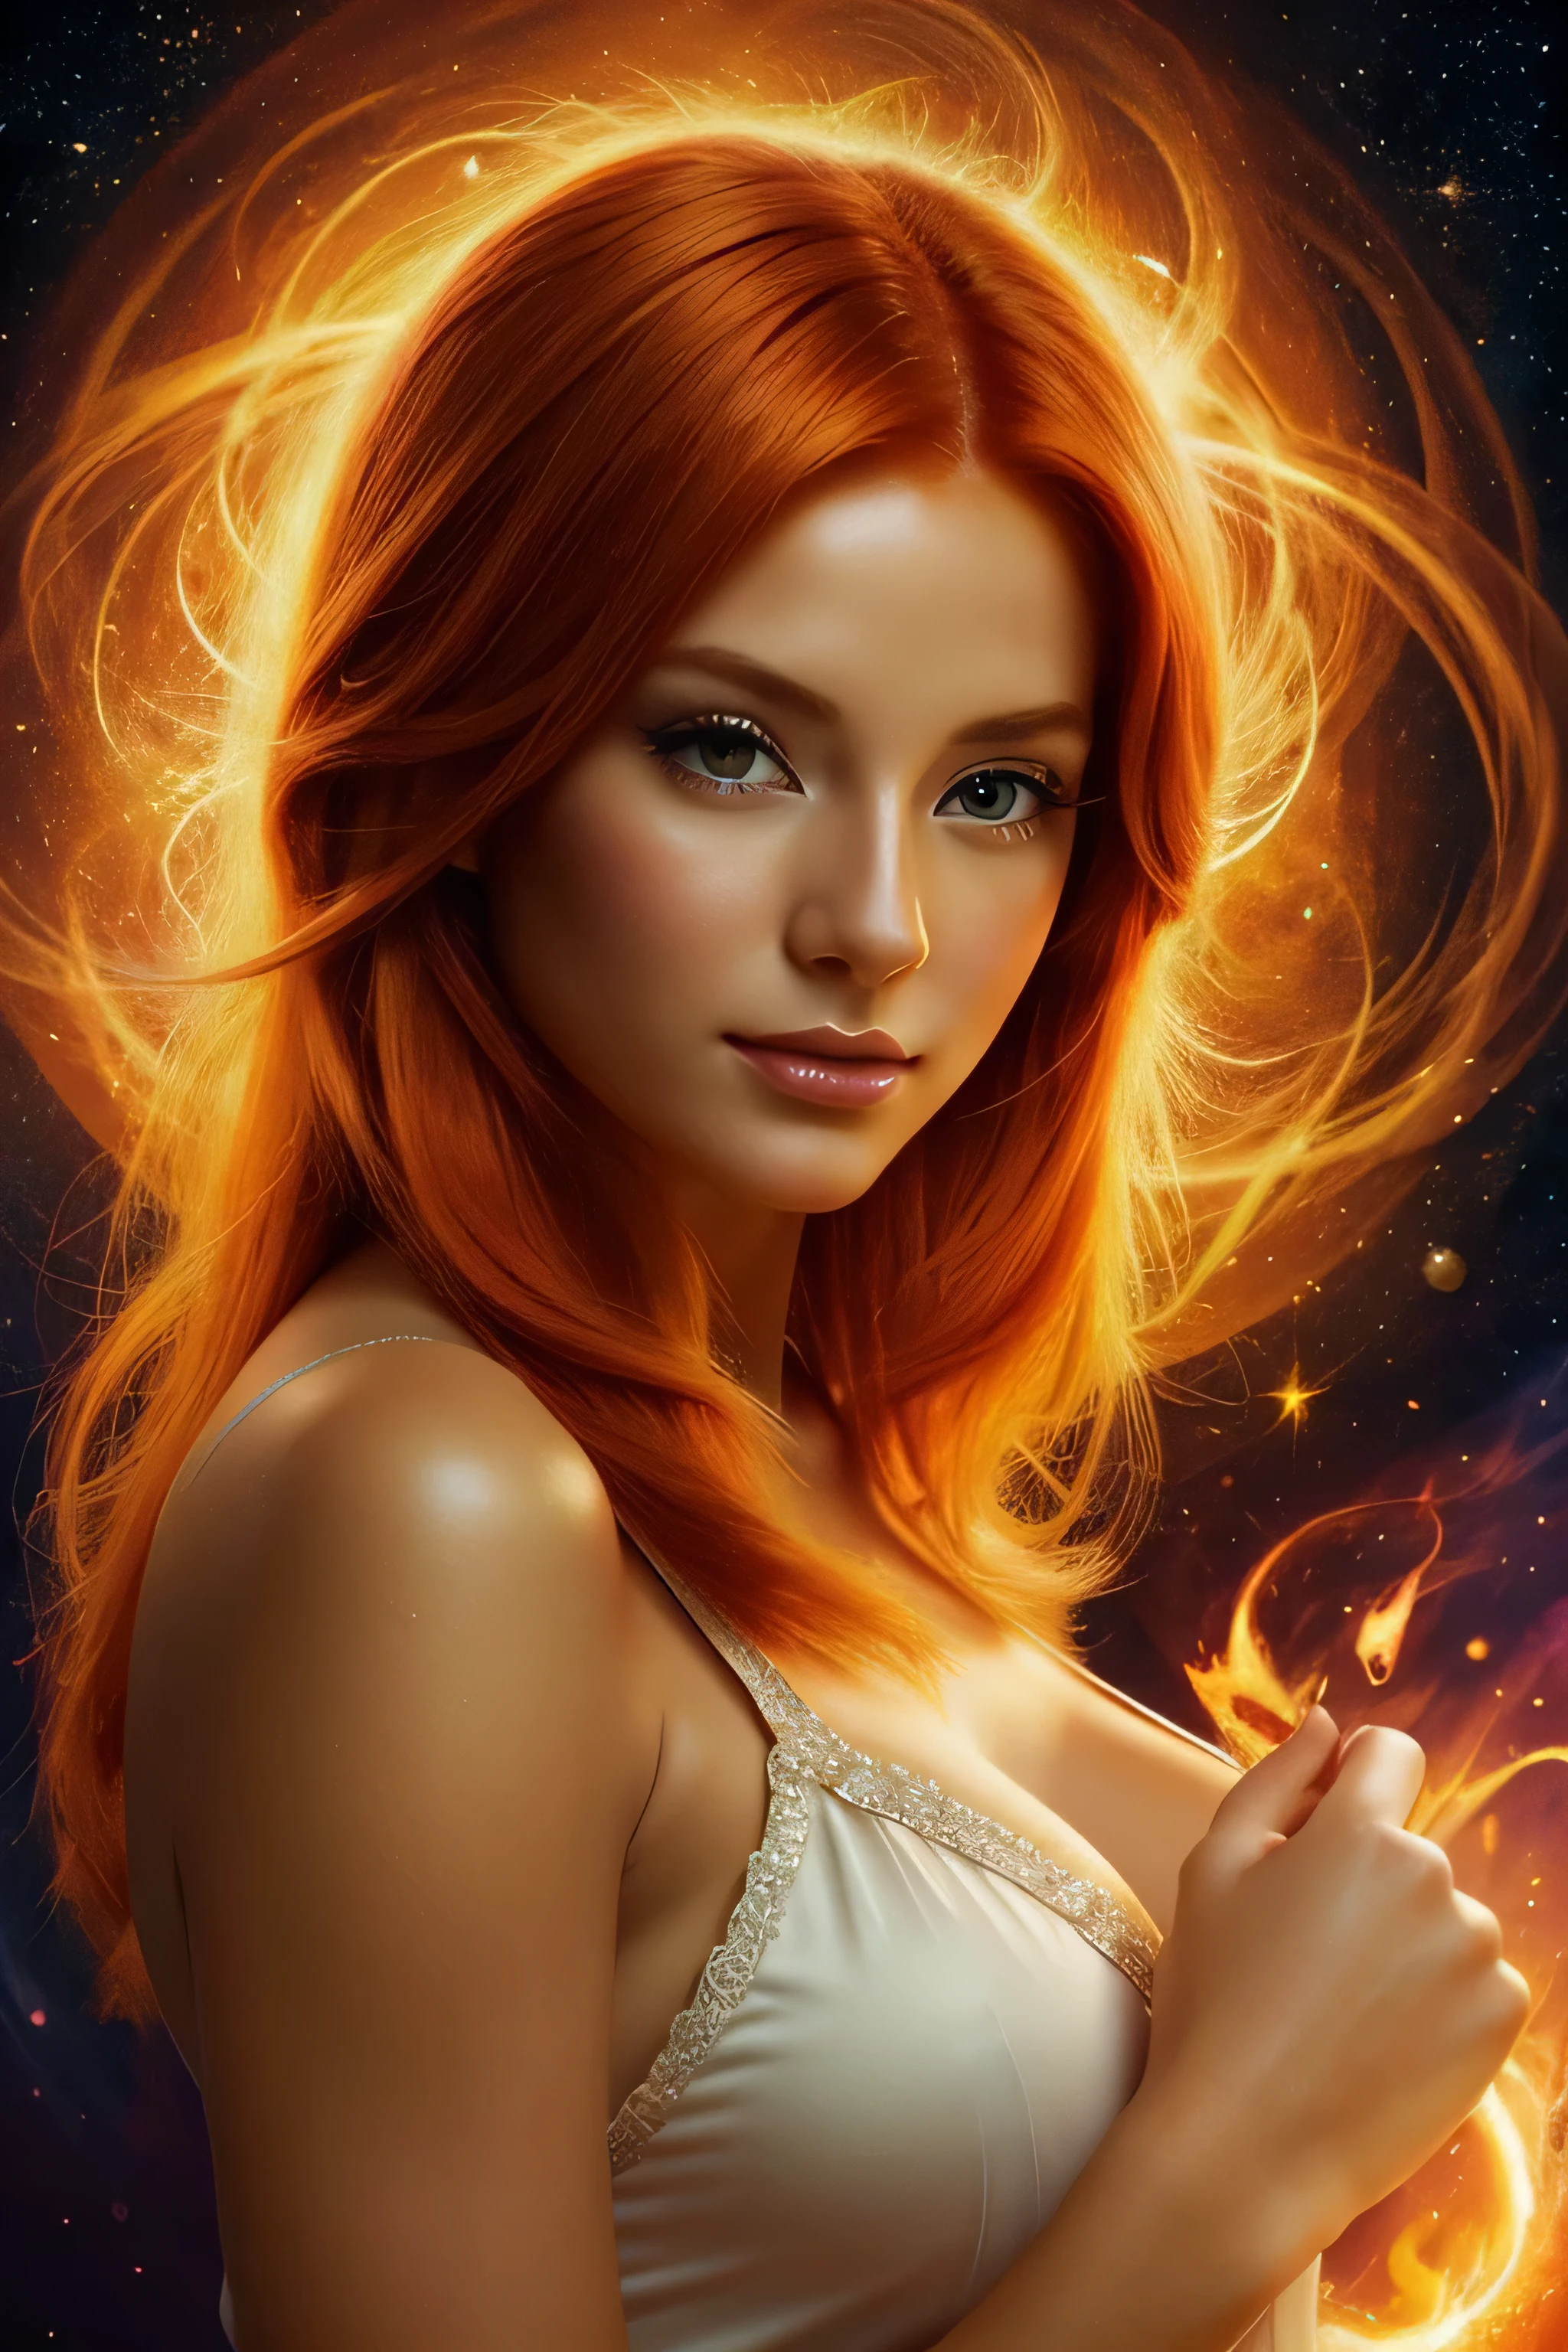 一幅色彩鲜艳的美丽橙色头发女人的画, 令人惊叹的渲染, 在辐射连接中, 灵感来自 Kinuko Y. 工艺,, 魔法元素, 小猫图标, 哇, 是美丽的, 施展多彩魔法, bright 闪光, 闪光